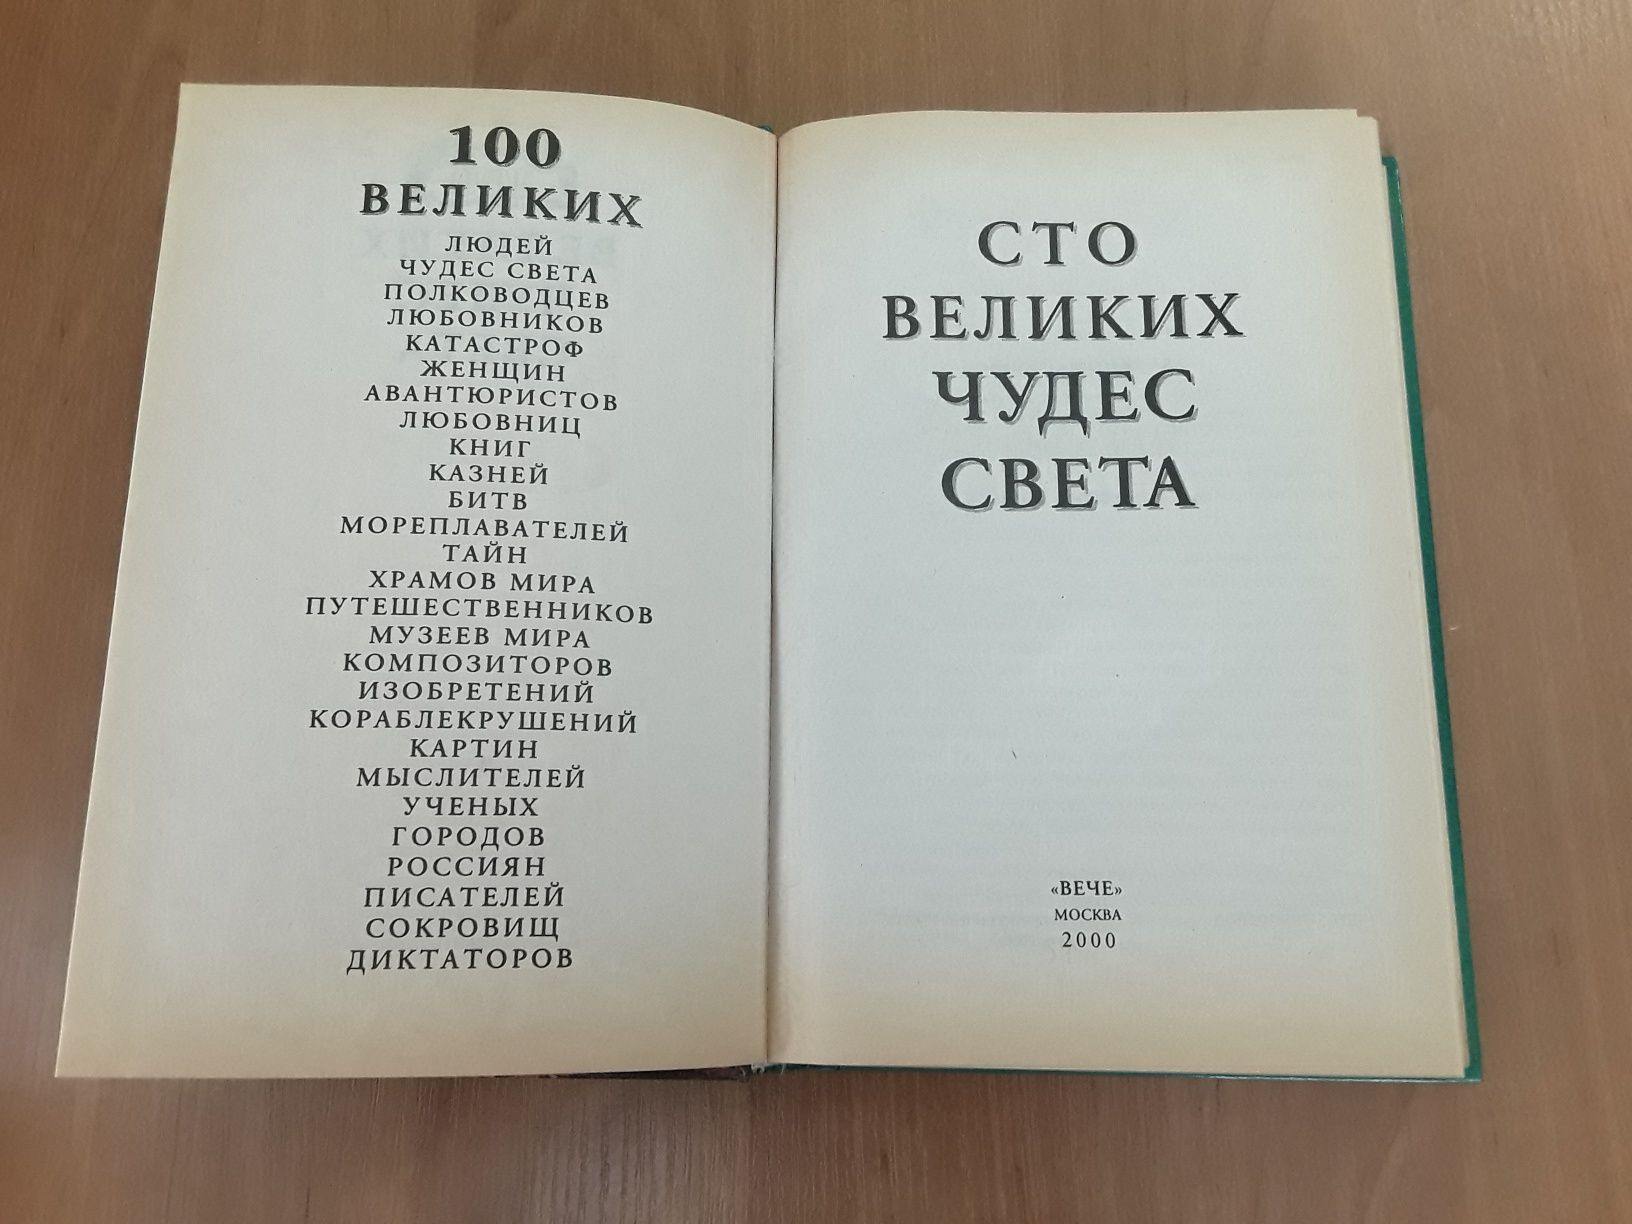 Книги серии "100 великих..." / "Сто великих..." (8 шт.)